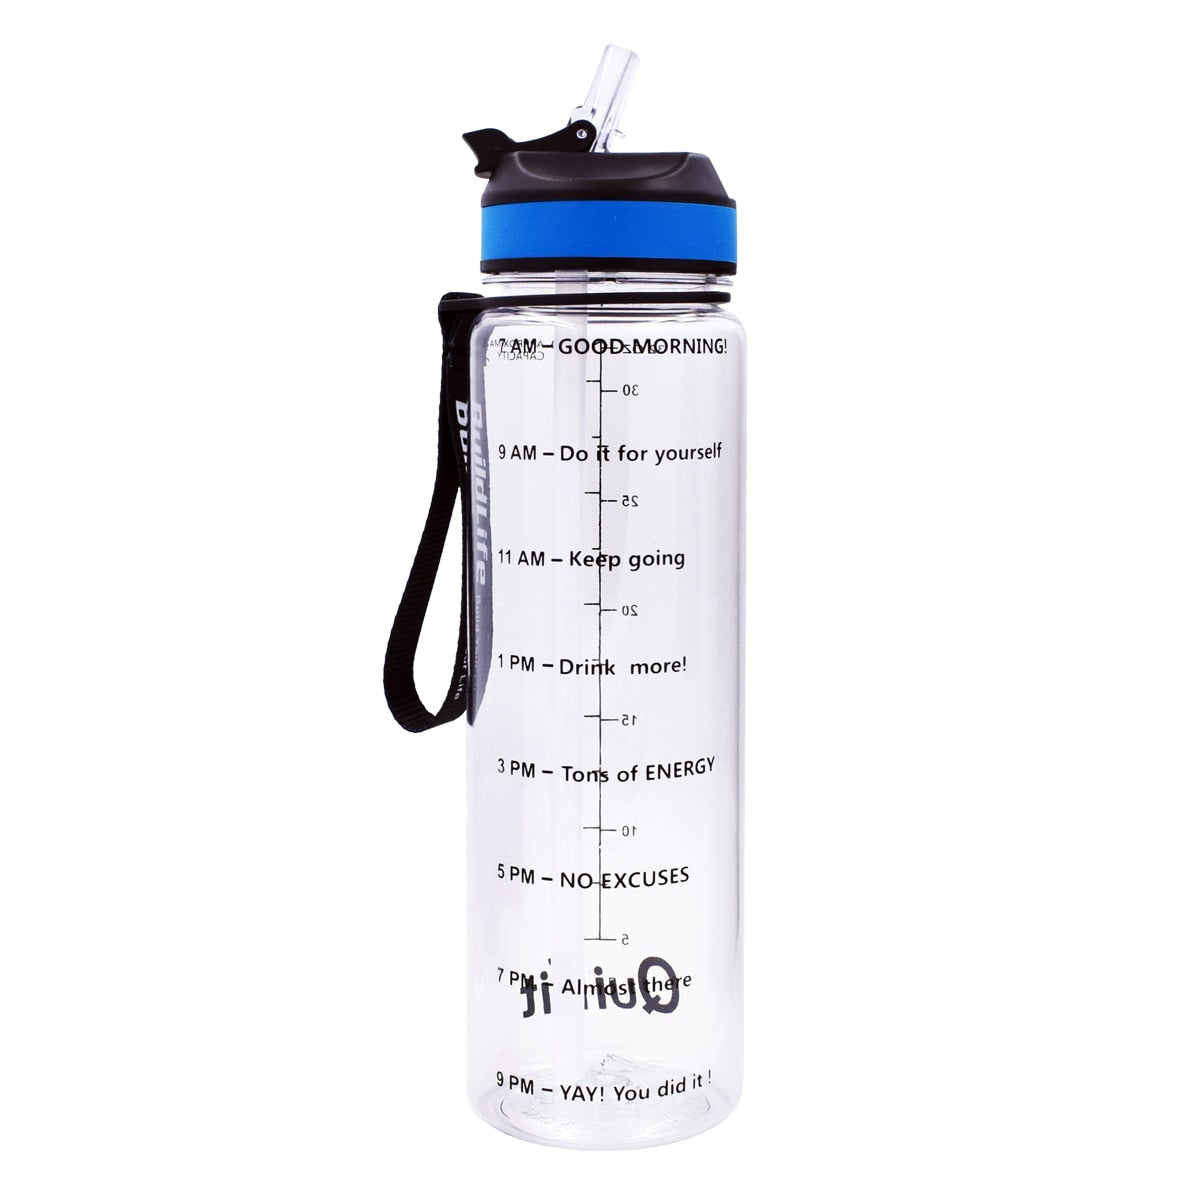 Eine transparente Sporttrinkflasche mit einer Zeitmarkierungen sowie motivierenden Spruechen für verschiedene Tageszeiten. Die Flasche hat eine schwarze Trageschlaufe und einen Deckel mit einem aufklappbaren Trinkverschluss.